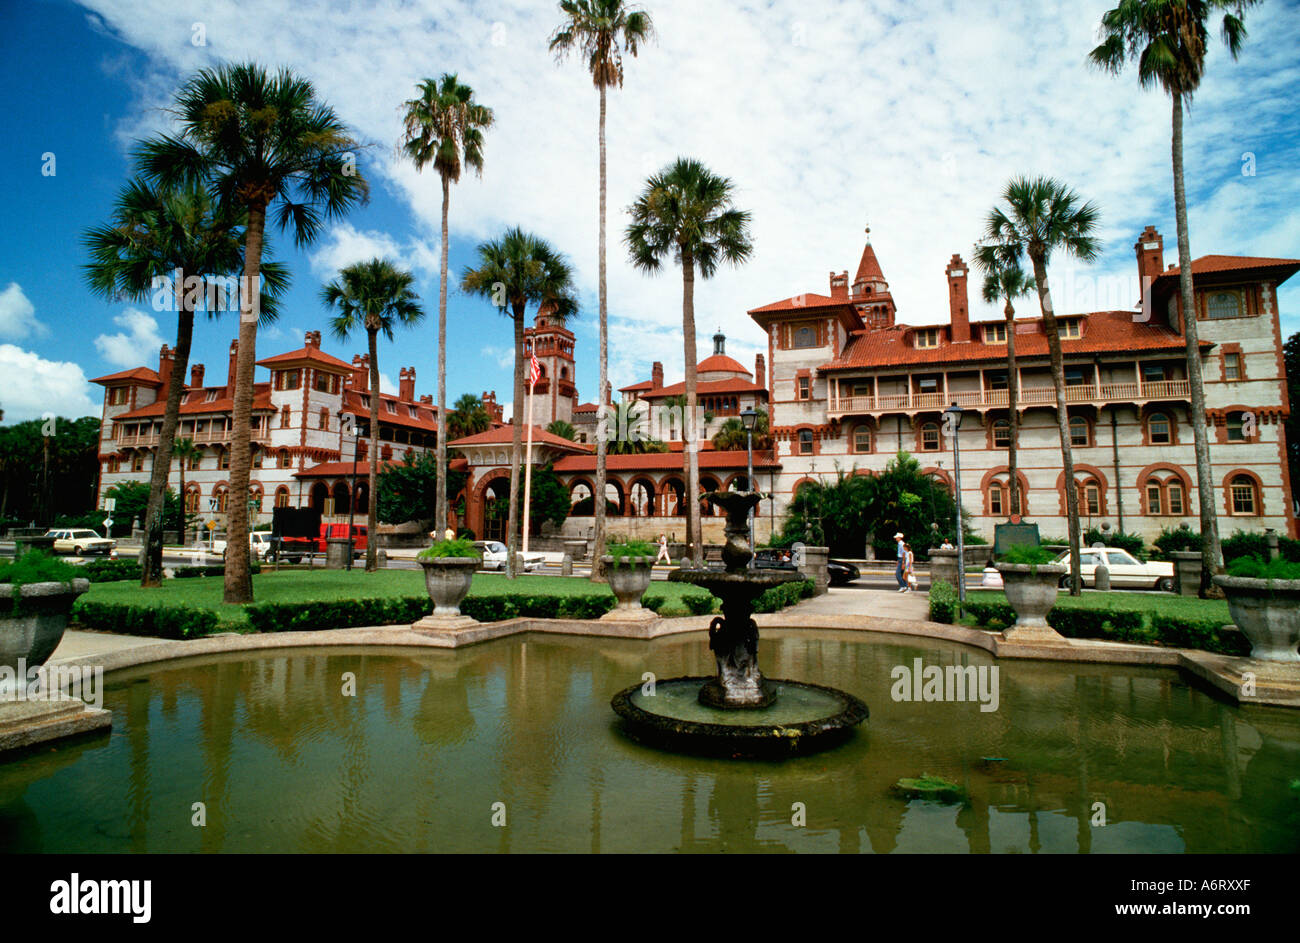 Flagler college collège d'arts libéraux à Saint Augustine en Floride USA Flagler College est situé dans l'ancien hôtel Ponce de Leon Banque D'Images